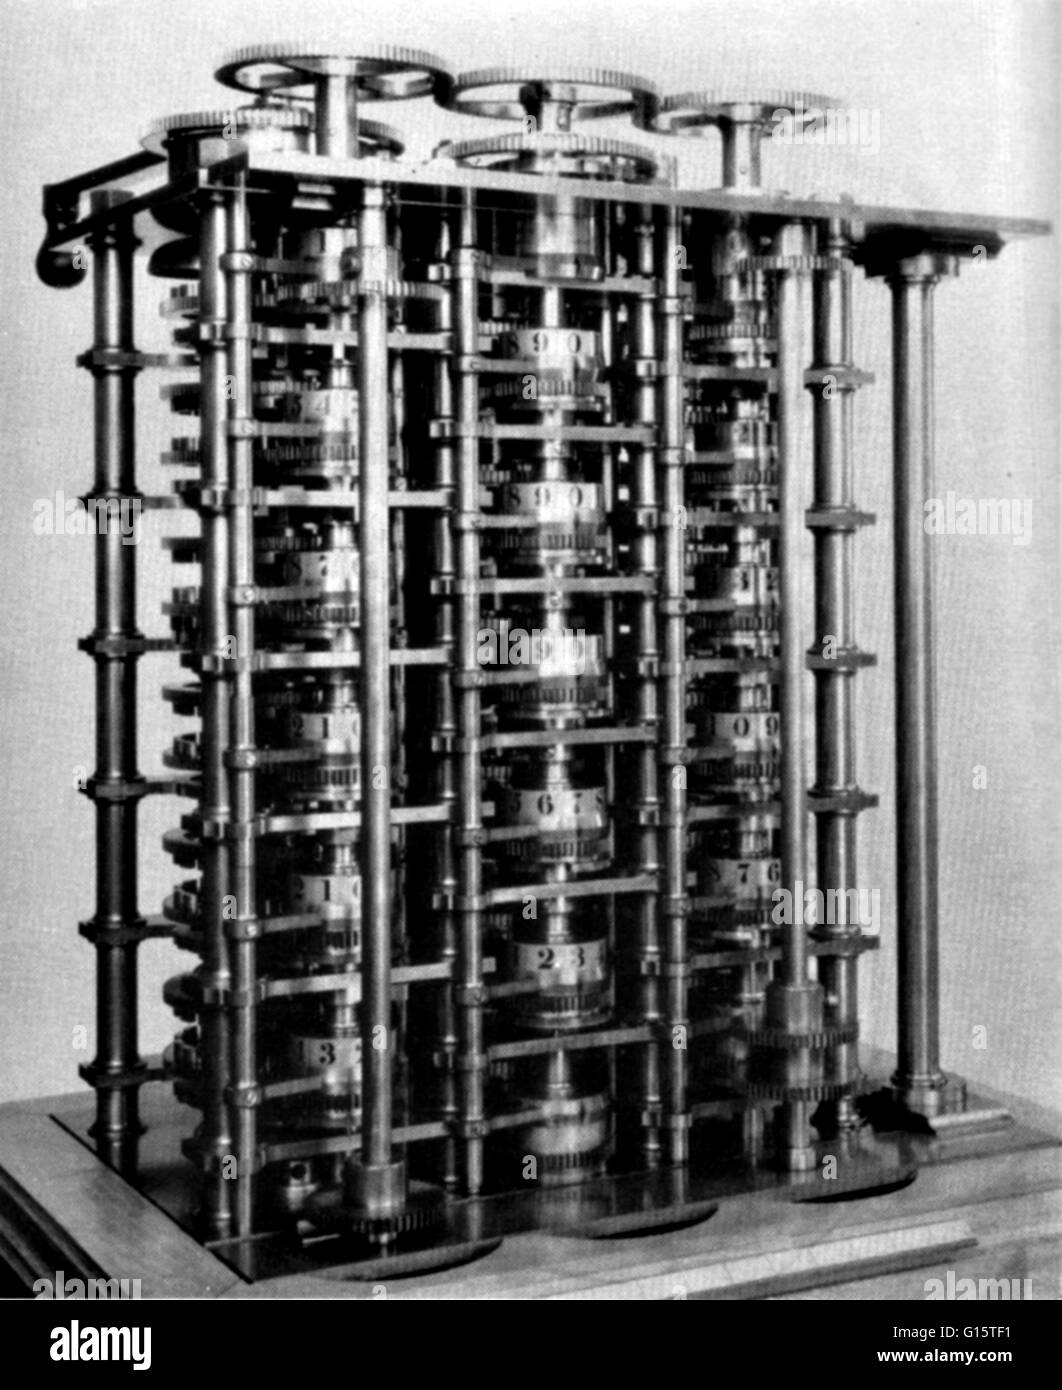 La differenza motore era Charles Babbage del design per il primo meccanico automatico calcolatrice. La differenza motore era un fine speciale dispositivo destinato alla produzione di tavole di matematica. Babbage ha iniziato a lavorare sul motore di differenza nel 1823 Foto Stock